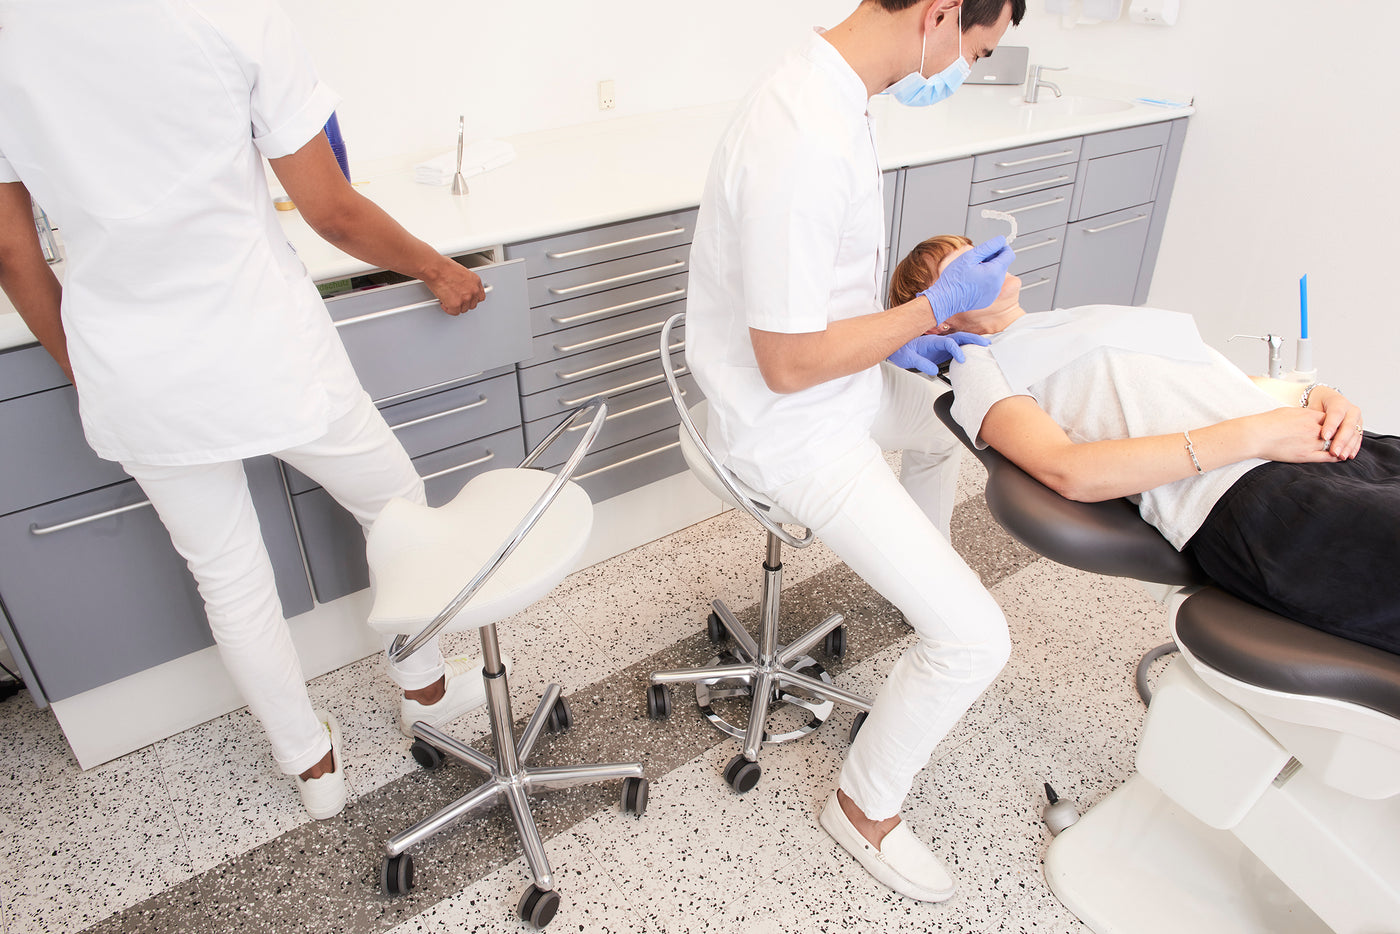 Tandklinik med tandlæge der sidder på InCharge stol med fodbetjening. Klinikassistent står ved siden af sin InCharge operatørstol. Patient ligger i patientstol.